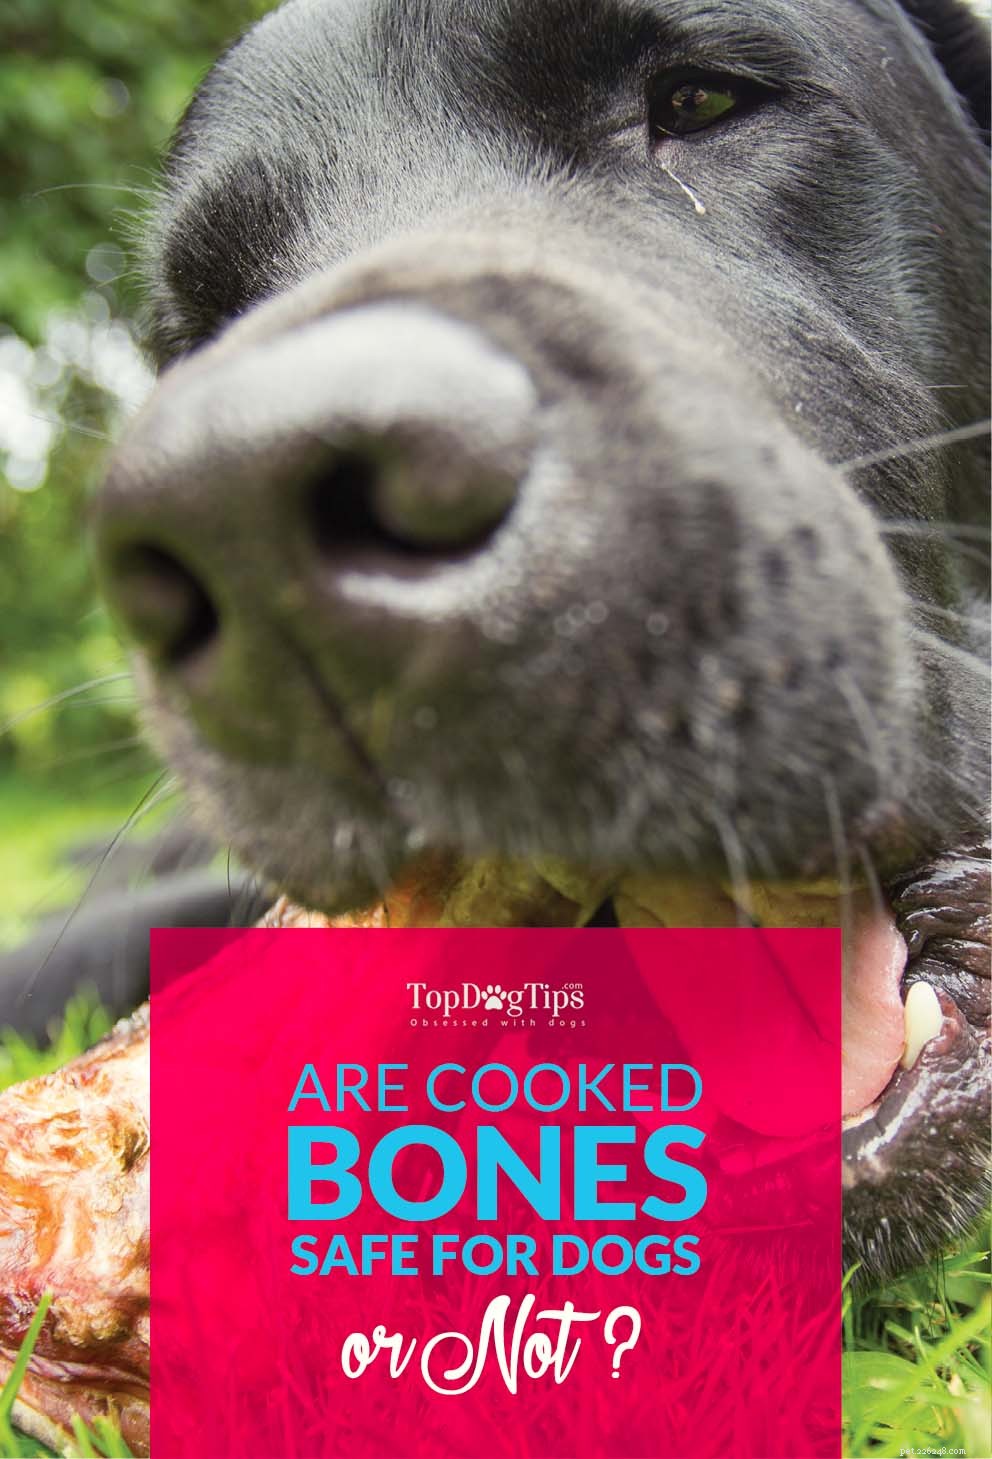 Vařené kosti pro psy nemusí být dobrý nápad